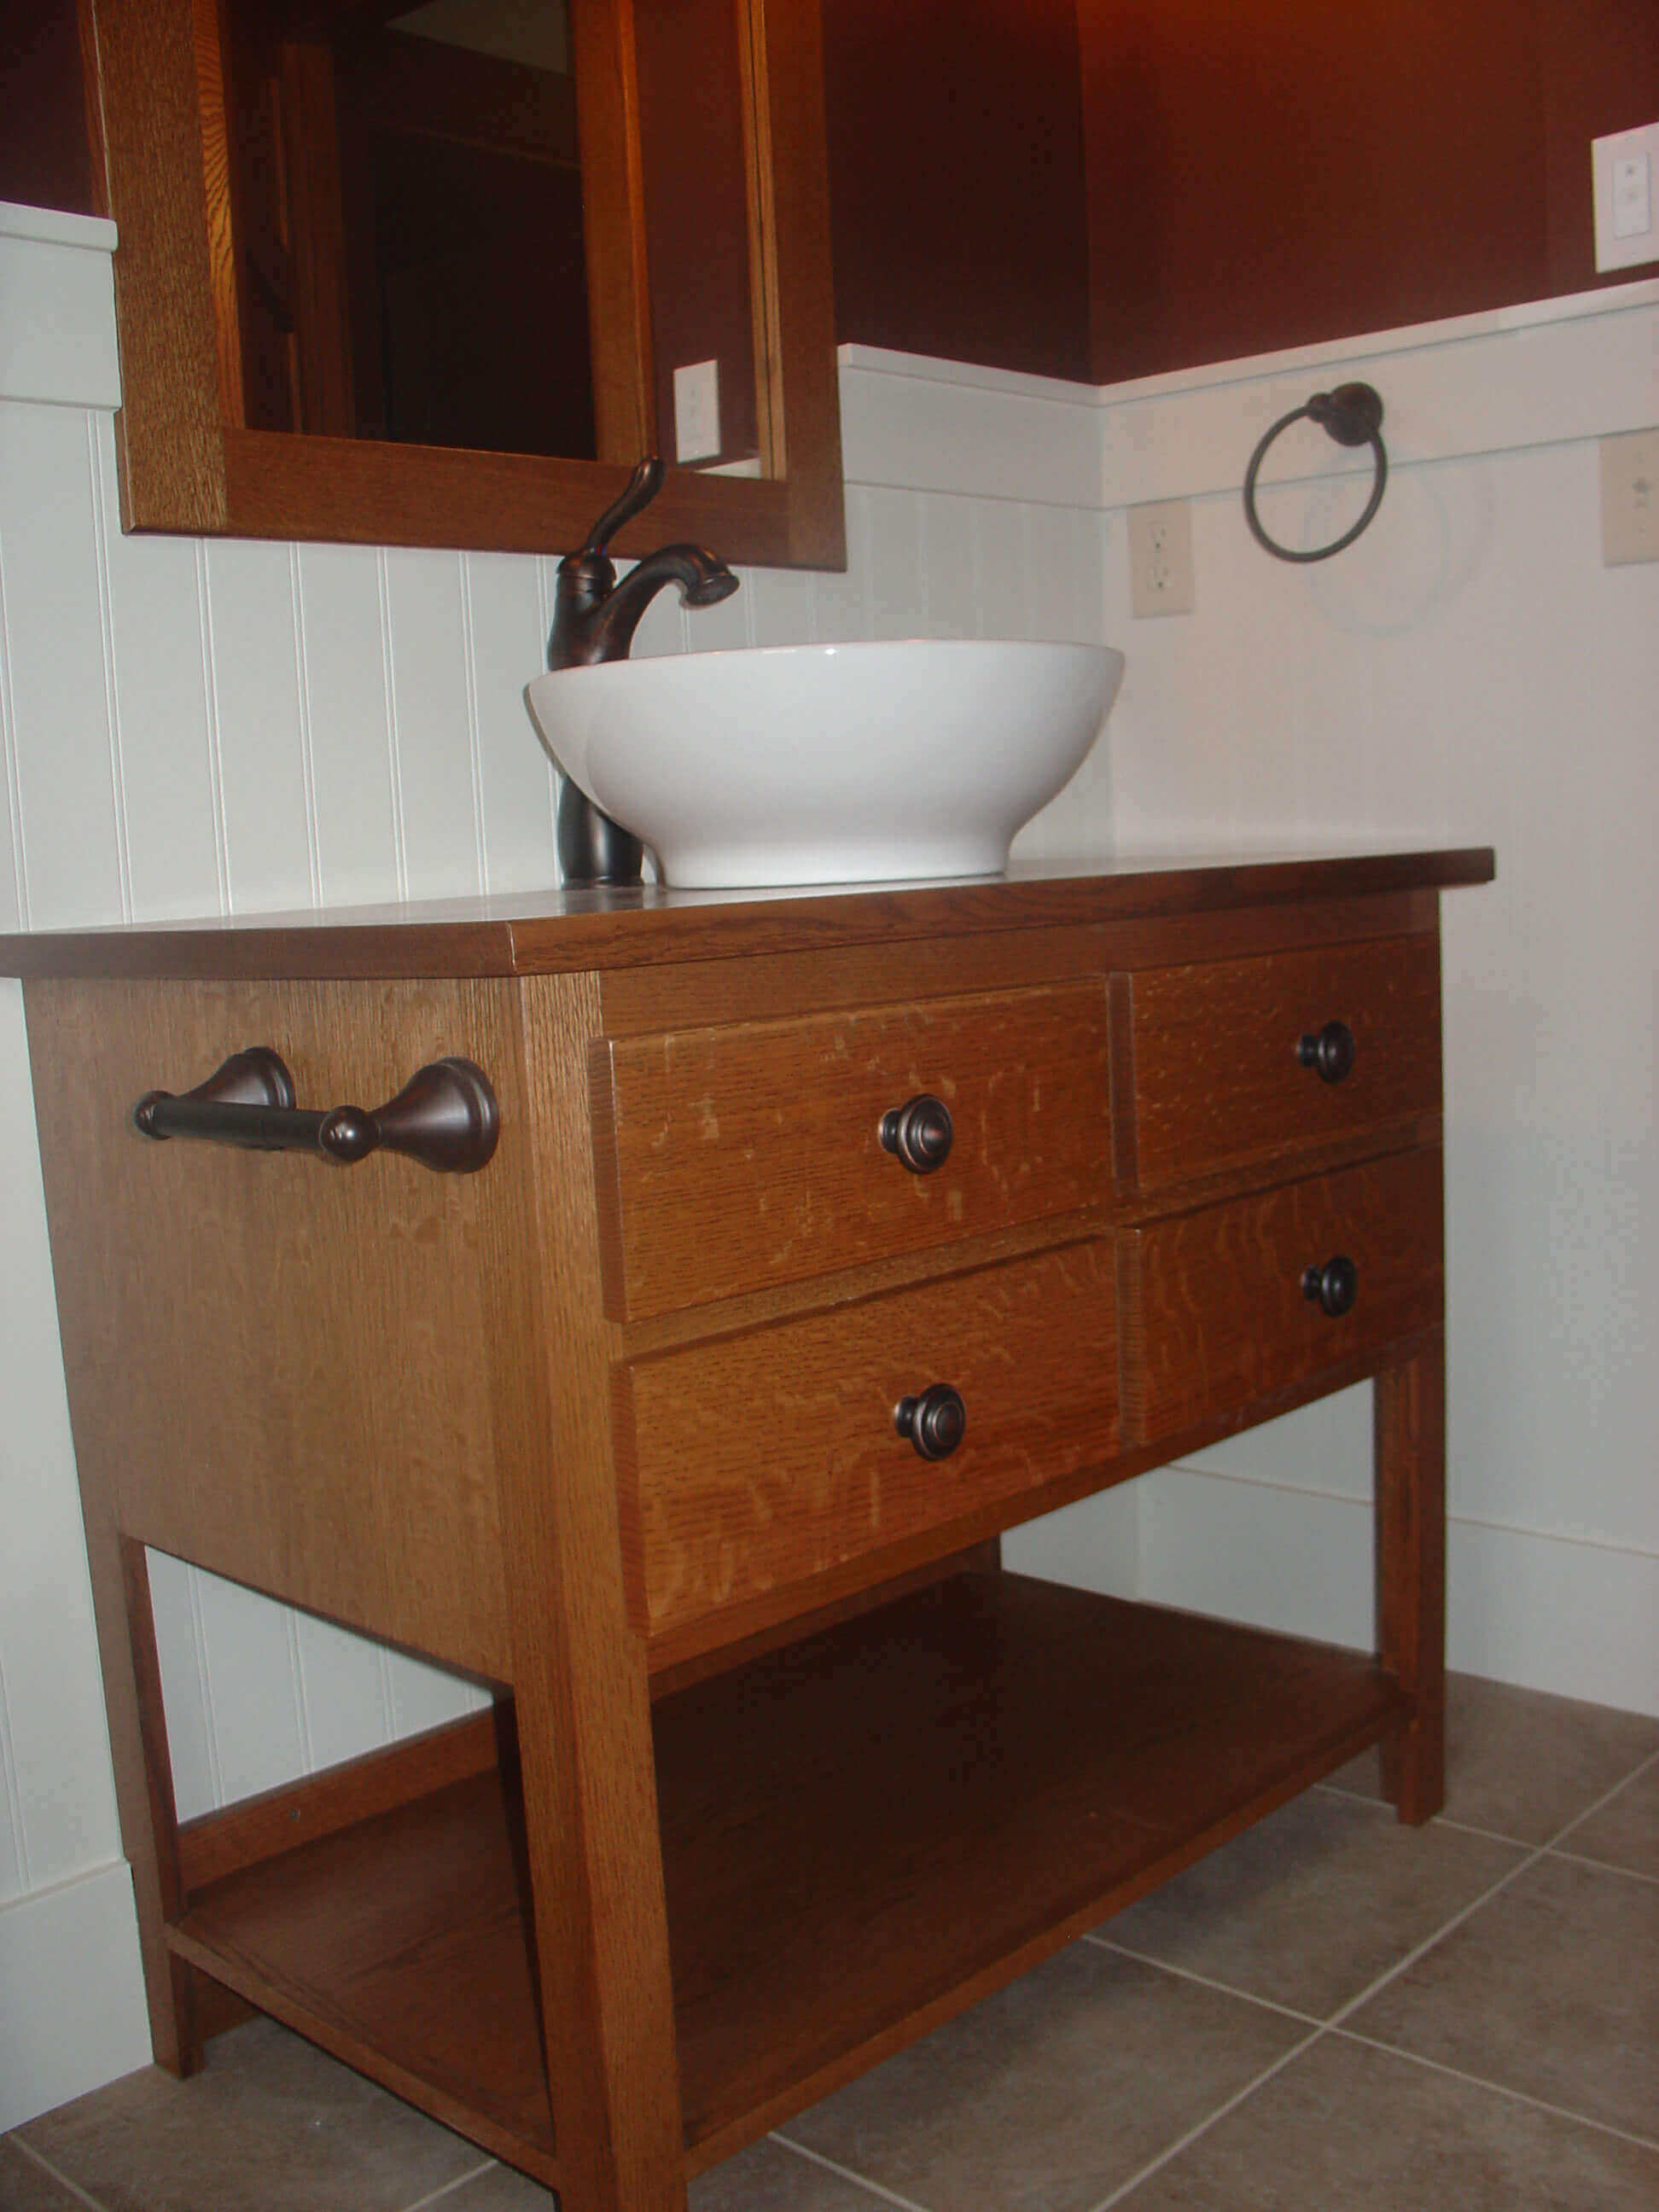 A wood dresser as a bathroom sink